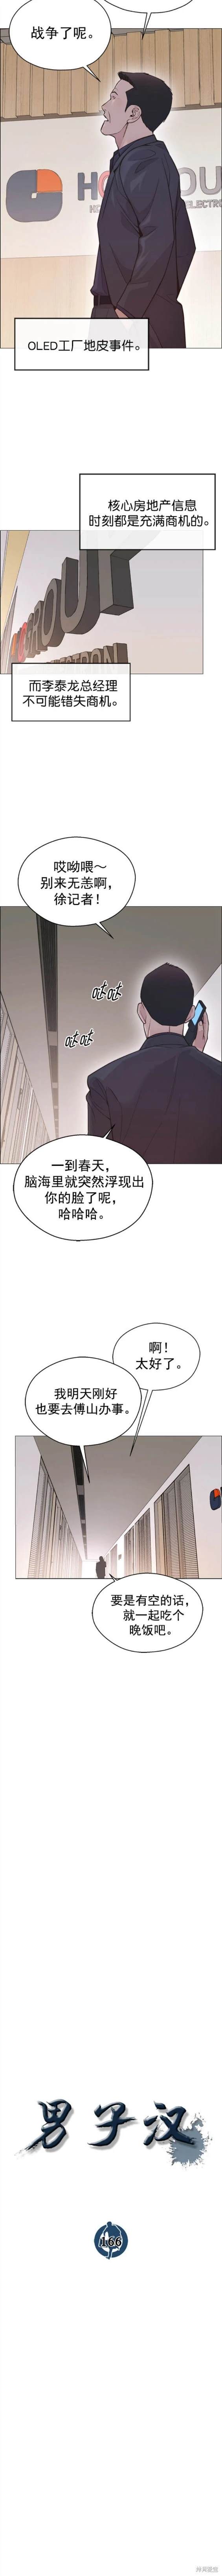 男子汉漫画,第166话4图